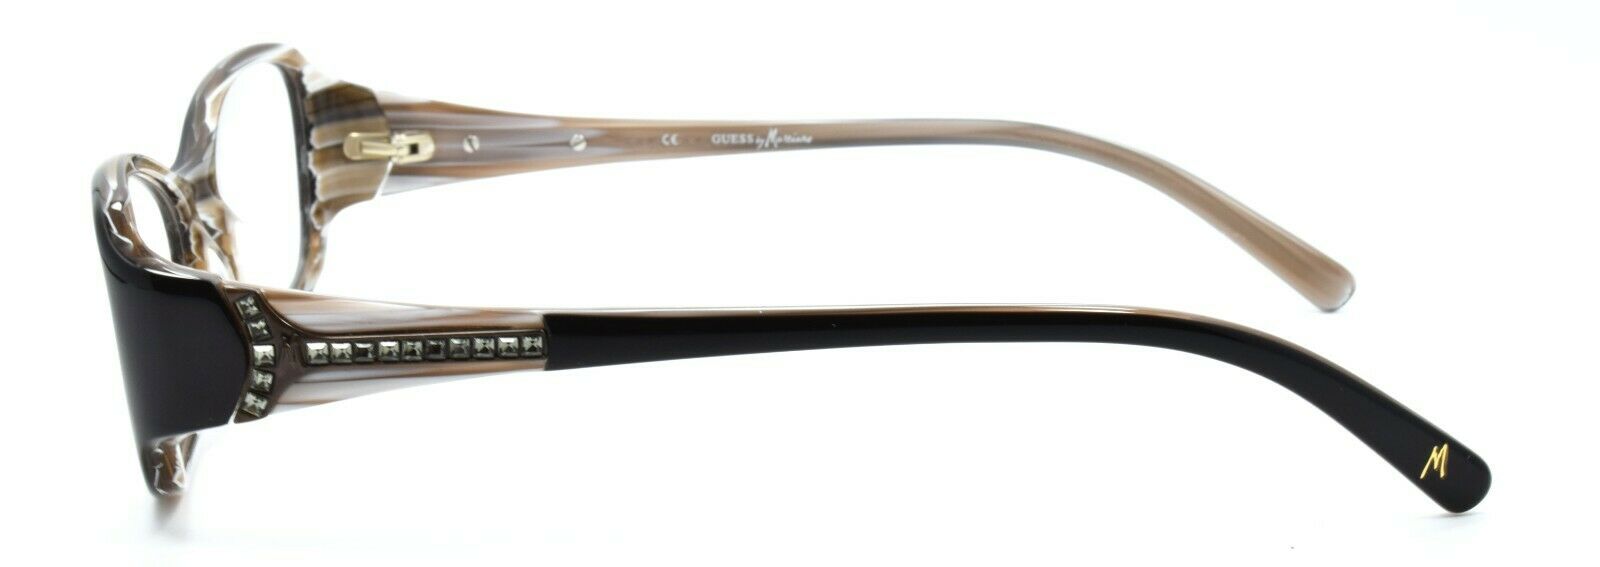 3-GUESS by Marciano GM142 BLK Women's Eyeglasses Frames 53-17-135 Black + Case-715583471597-IKSpecs